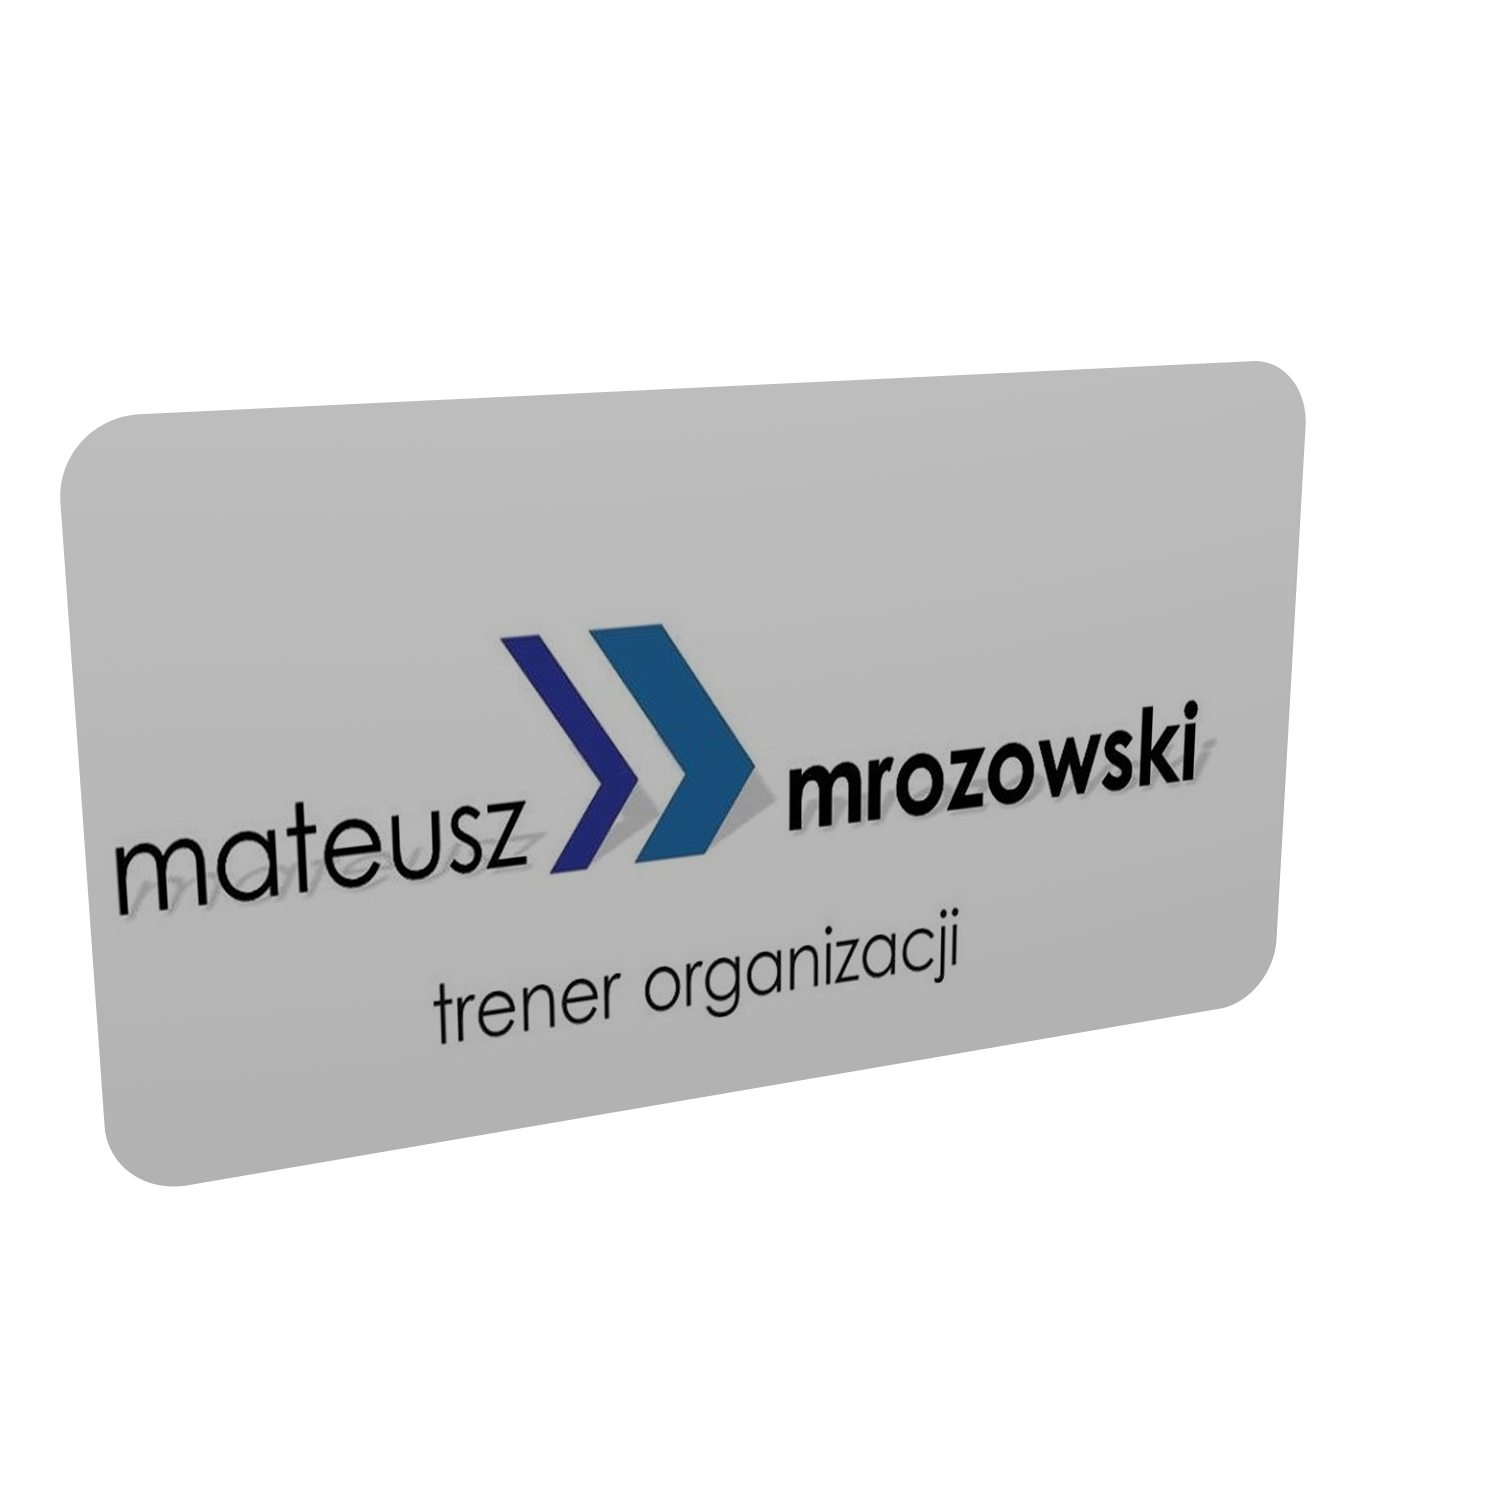 oficjalna strona mateuszmrozowski.pl